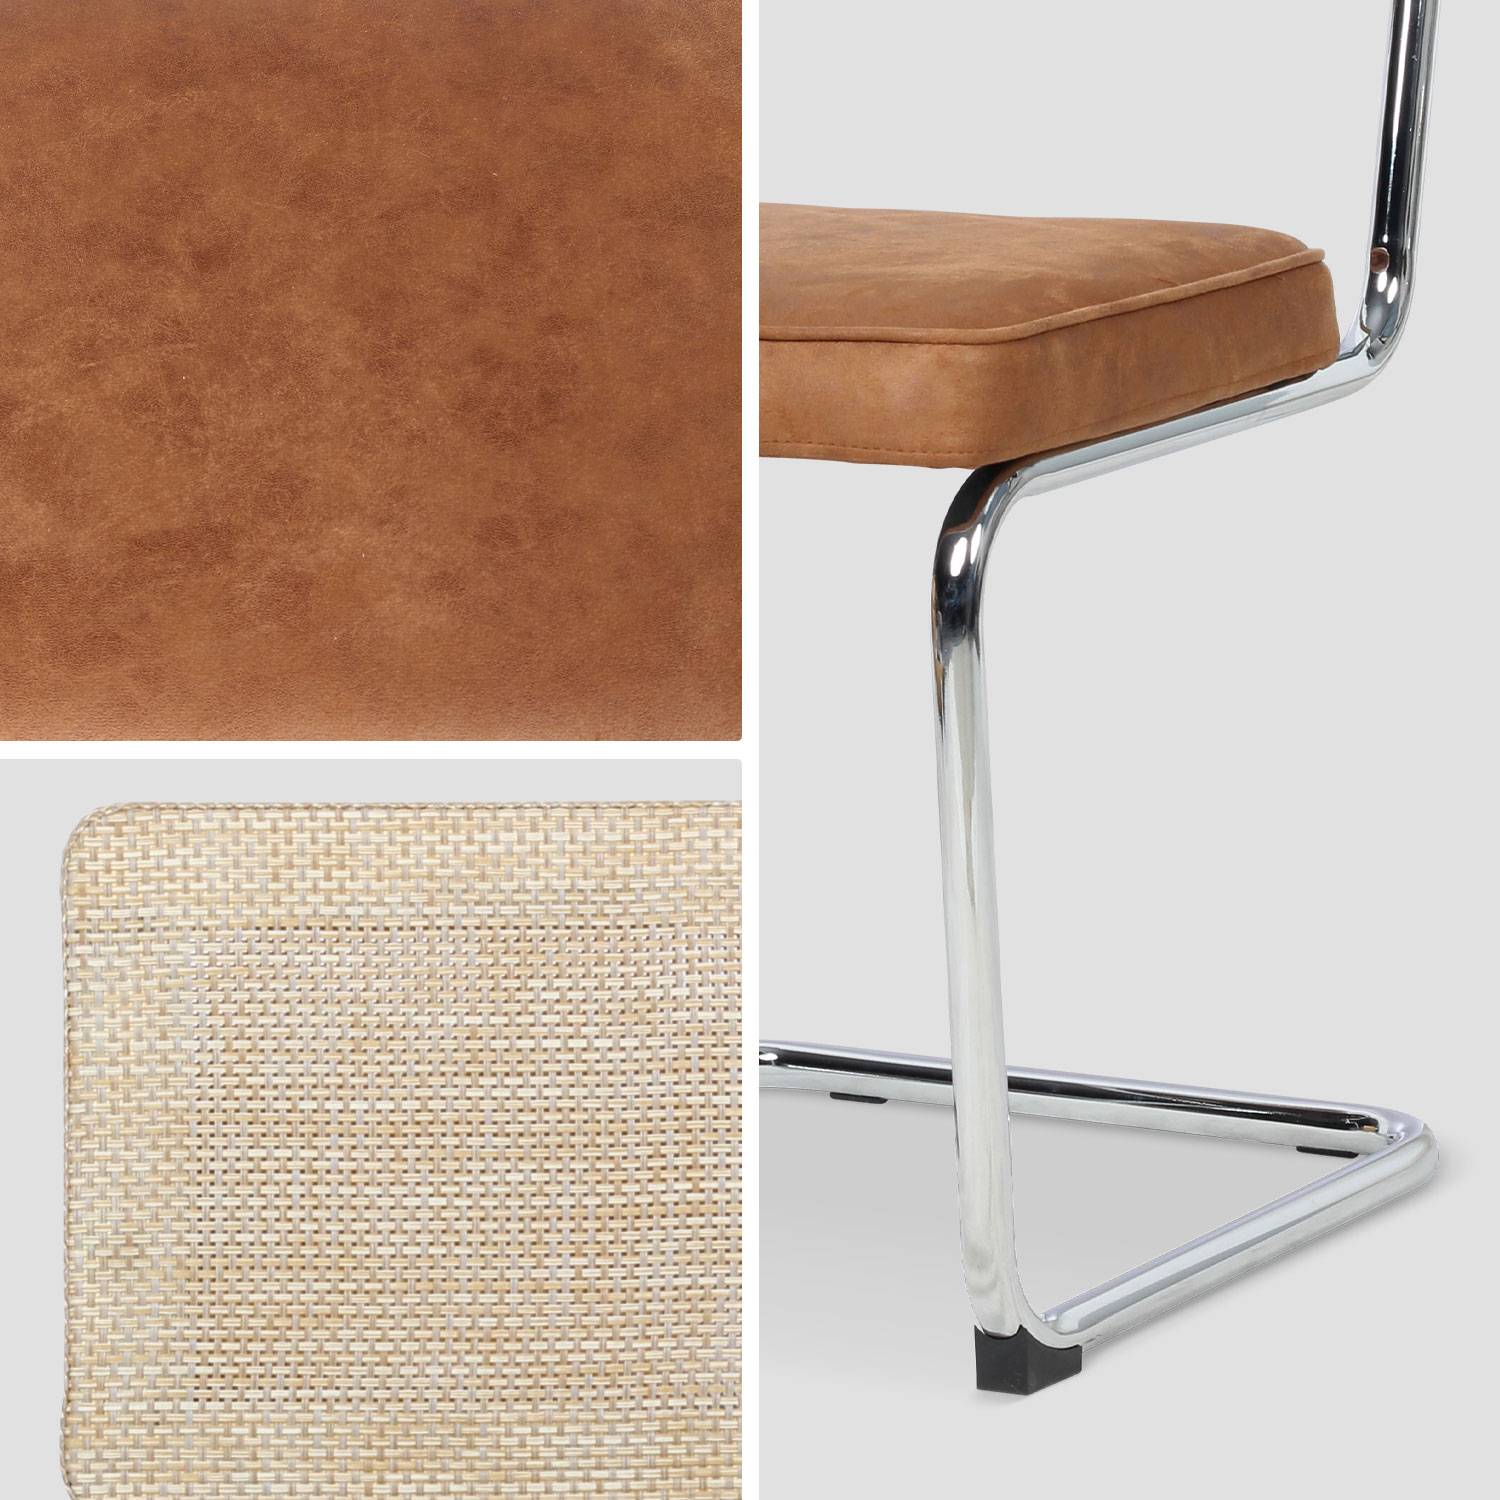 2 chaises cantilever - Maja - tissu marron et résine, 46 x 54,5 x 84,5cm   Photo7